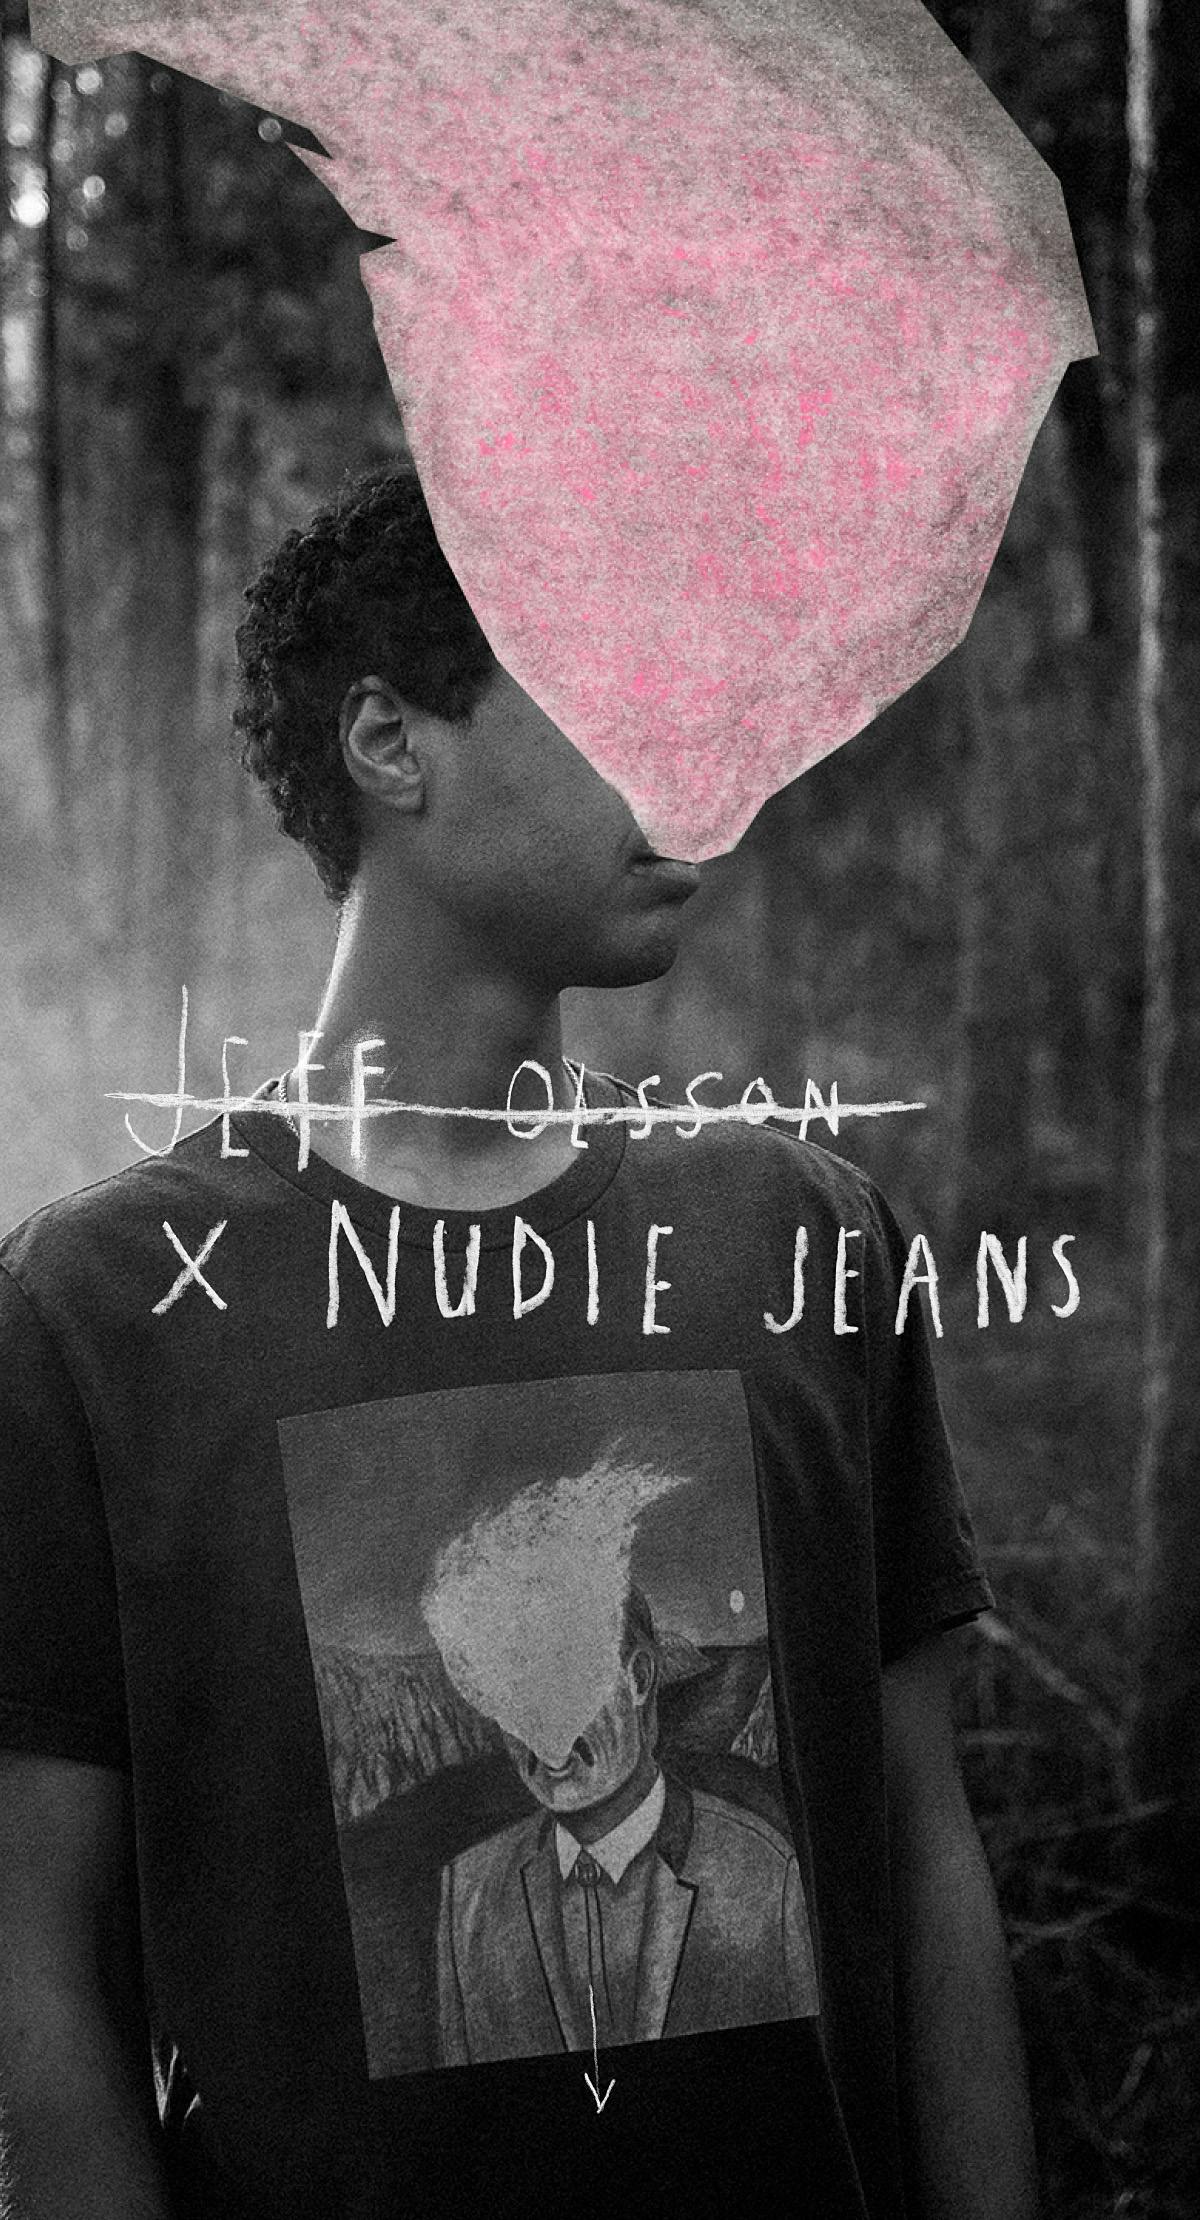 Jeff Olsson x Nudie Jeans